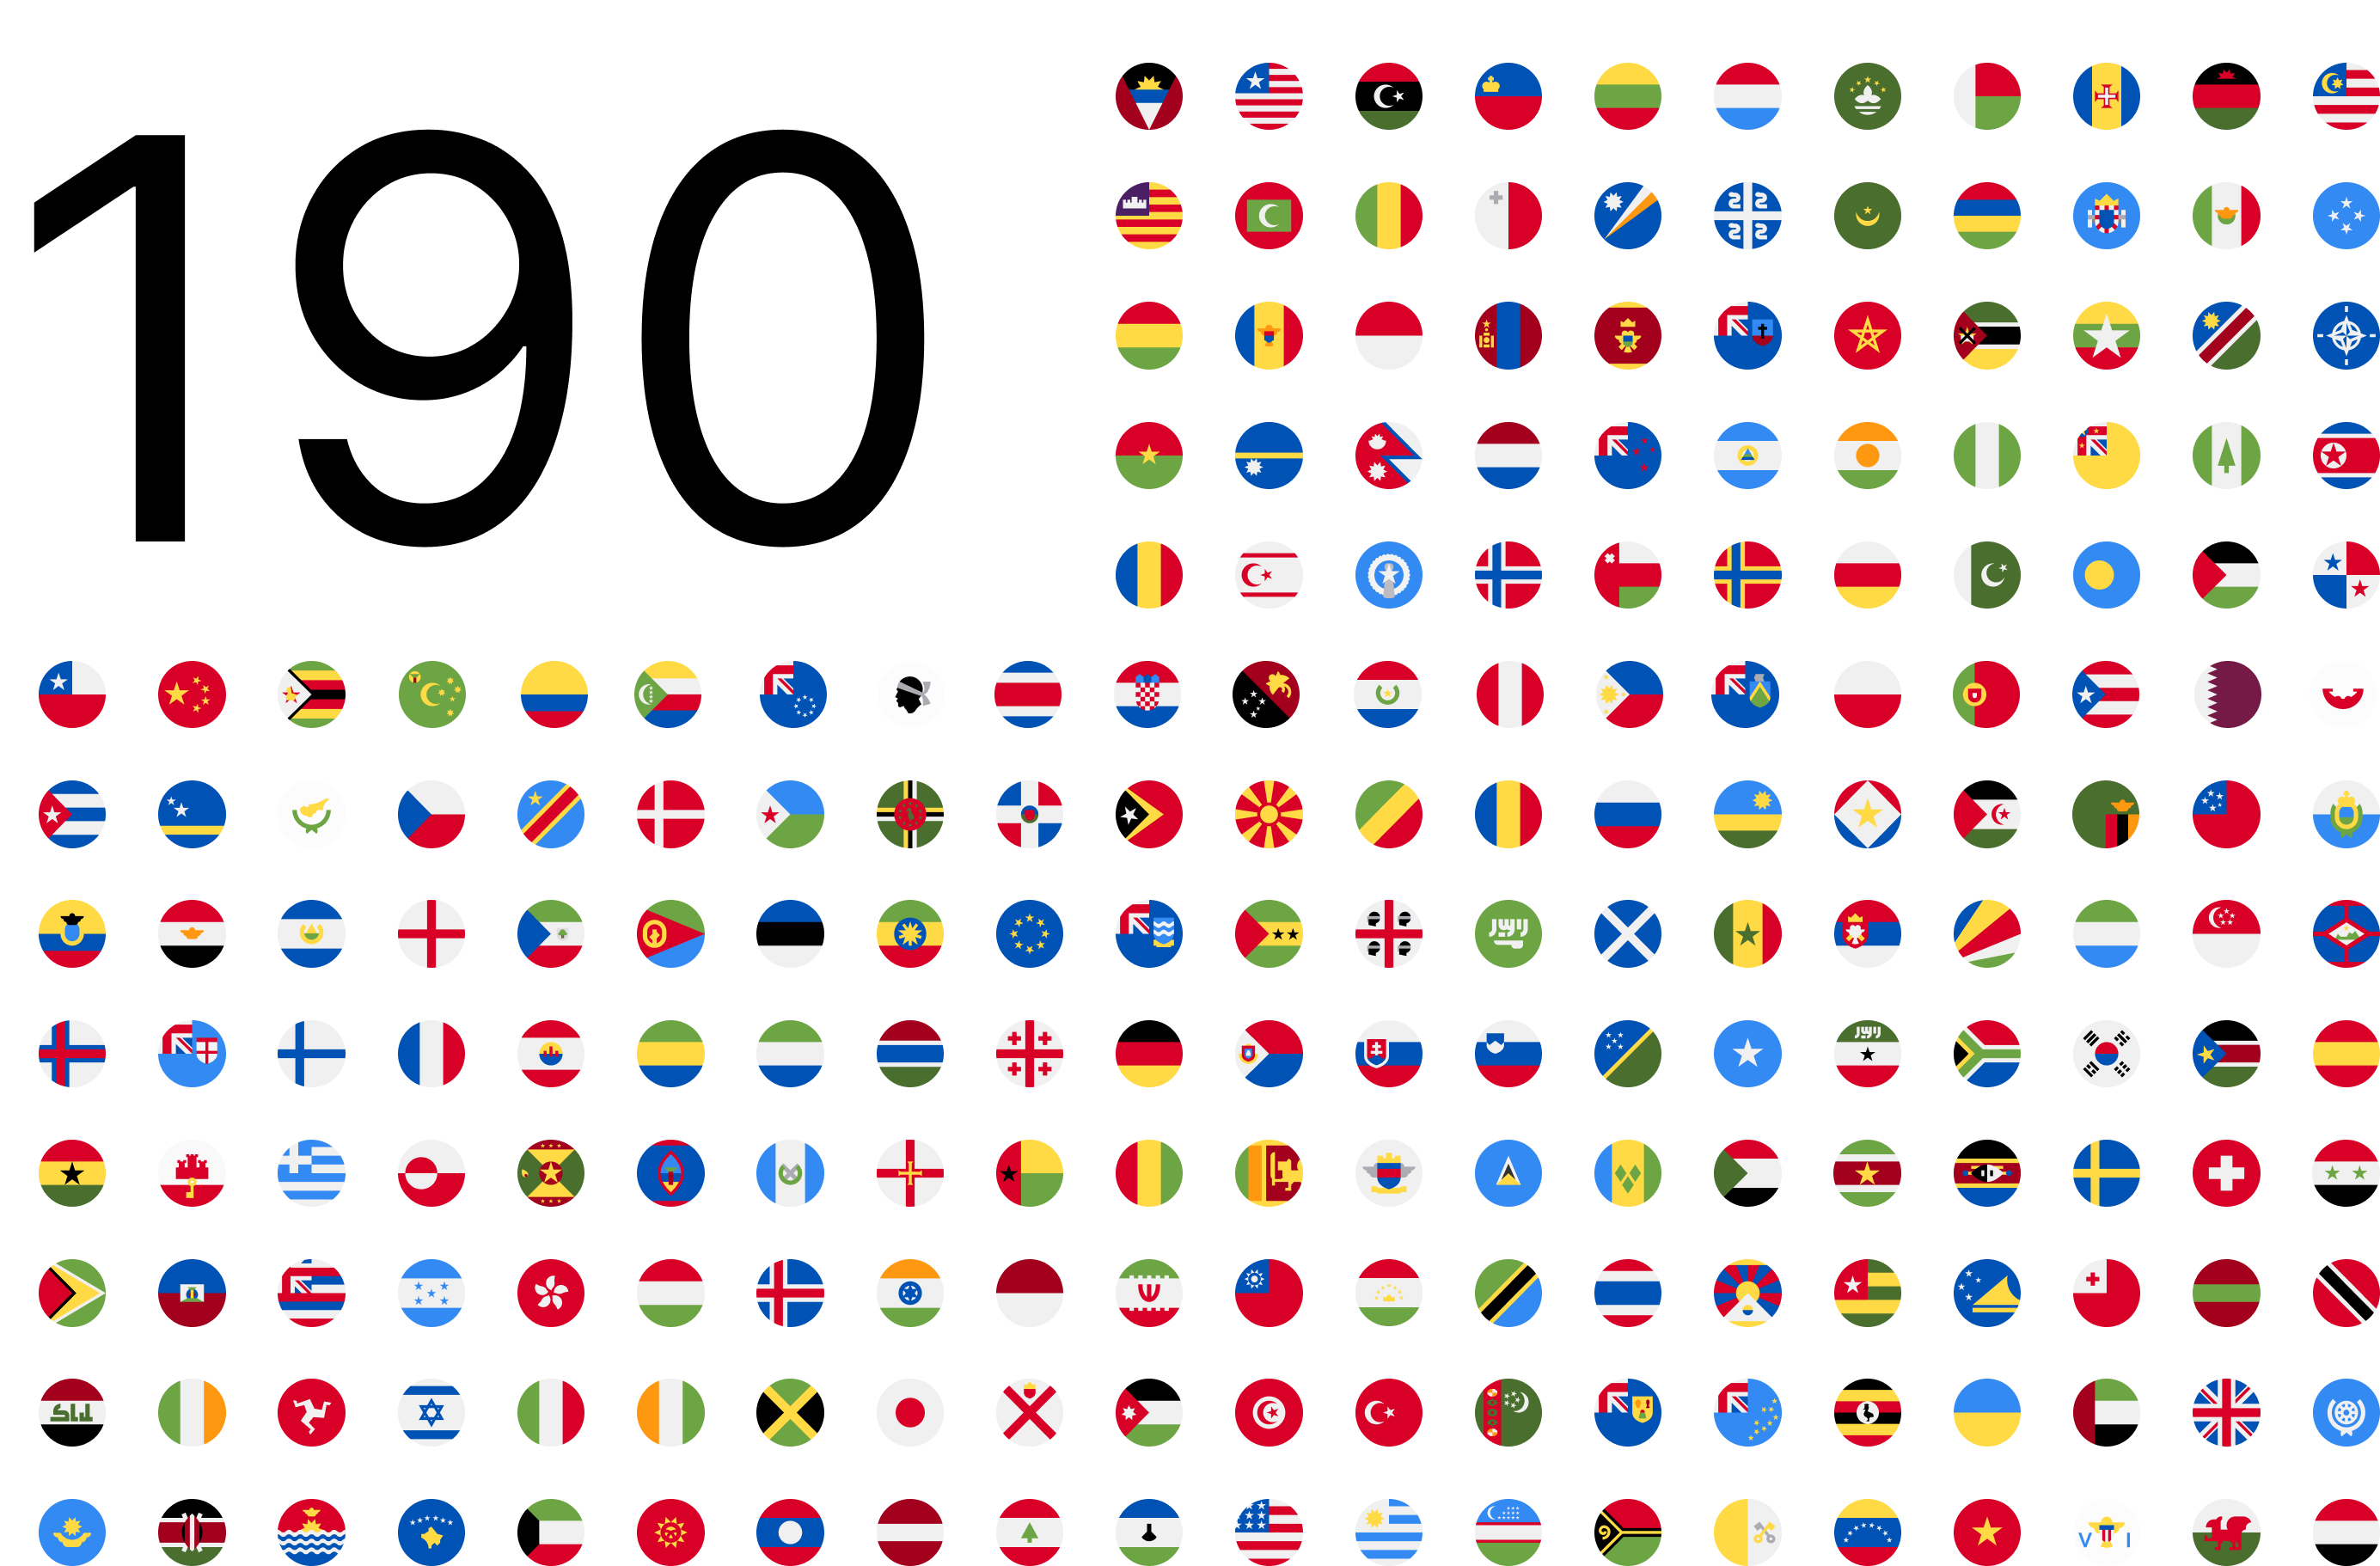 190 languages